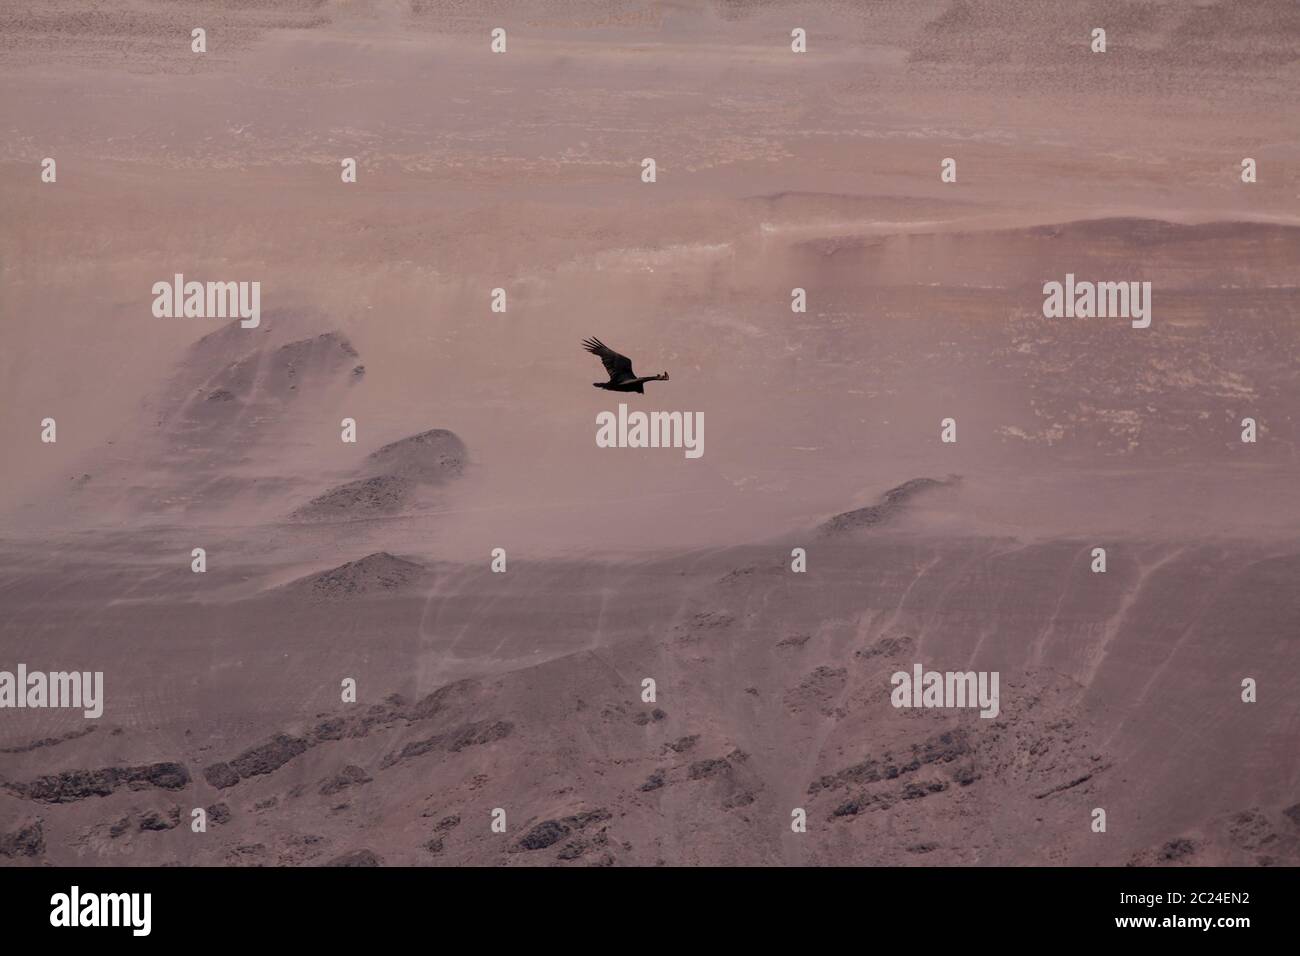 Un oiseau noir solitaire vole sur un désert sec Banque D'Images